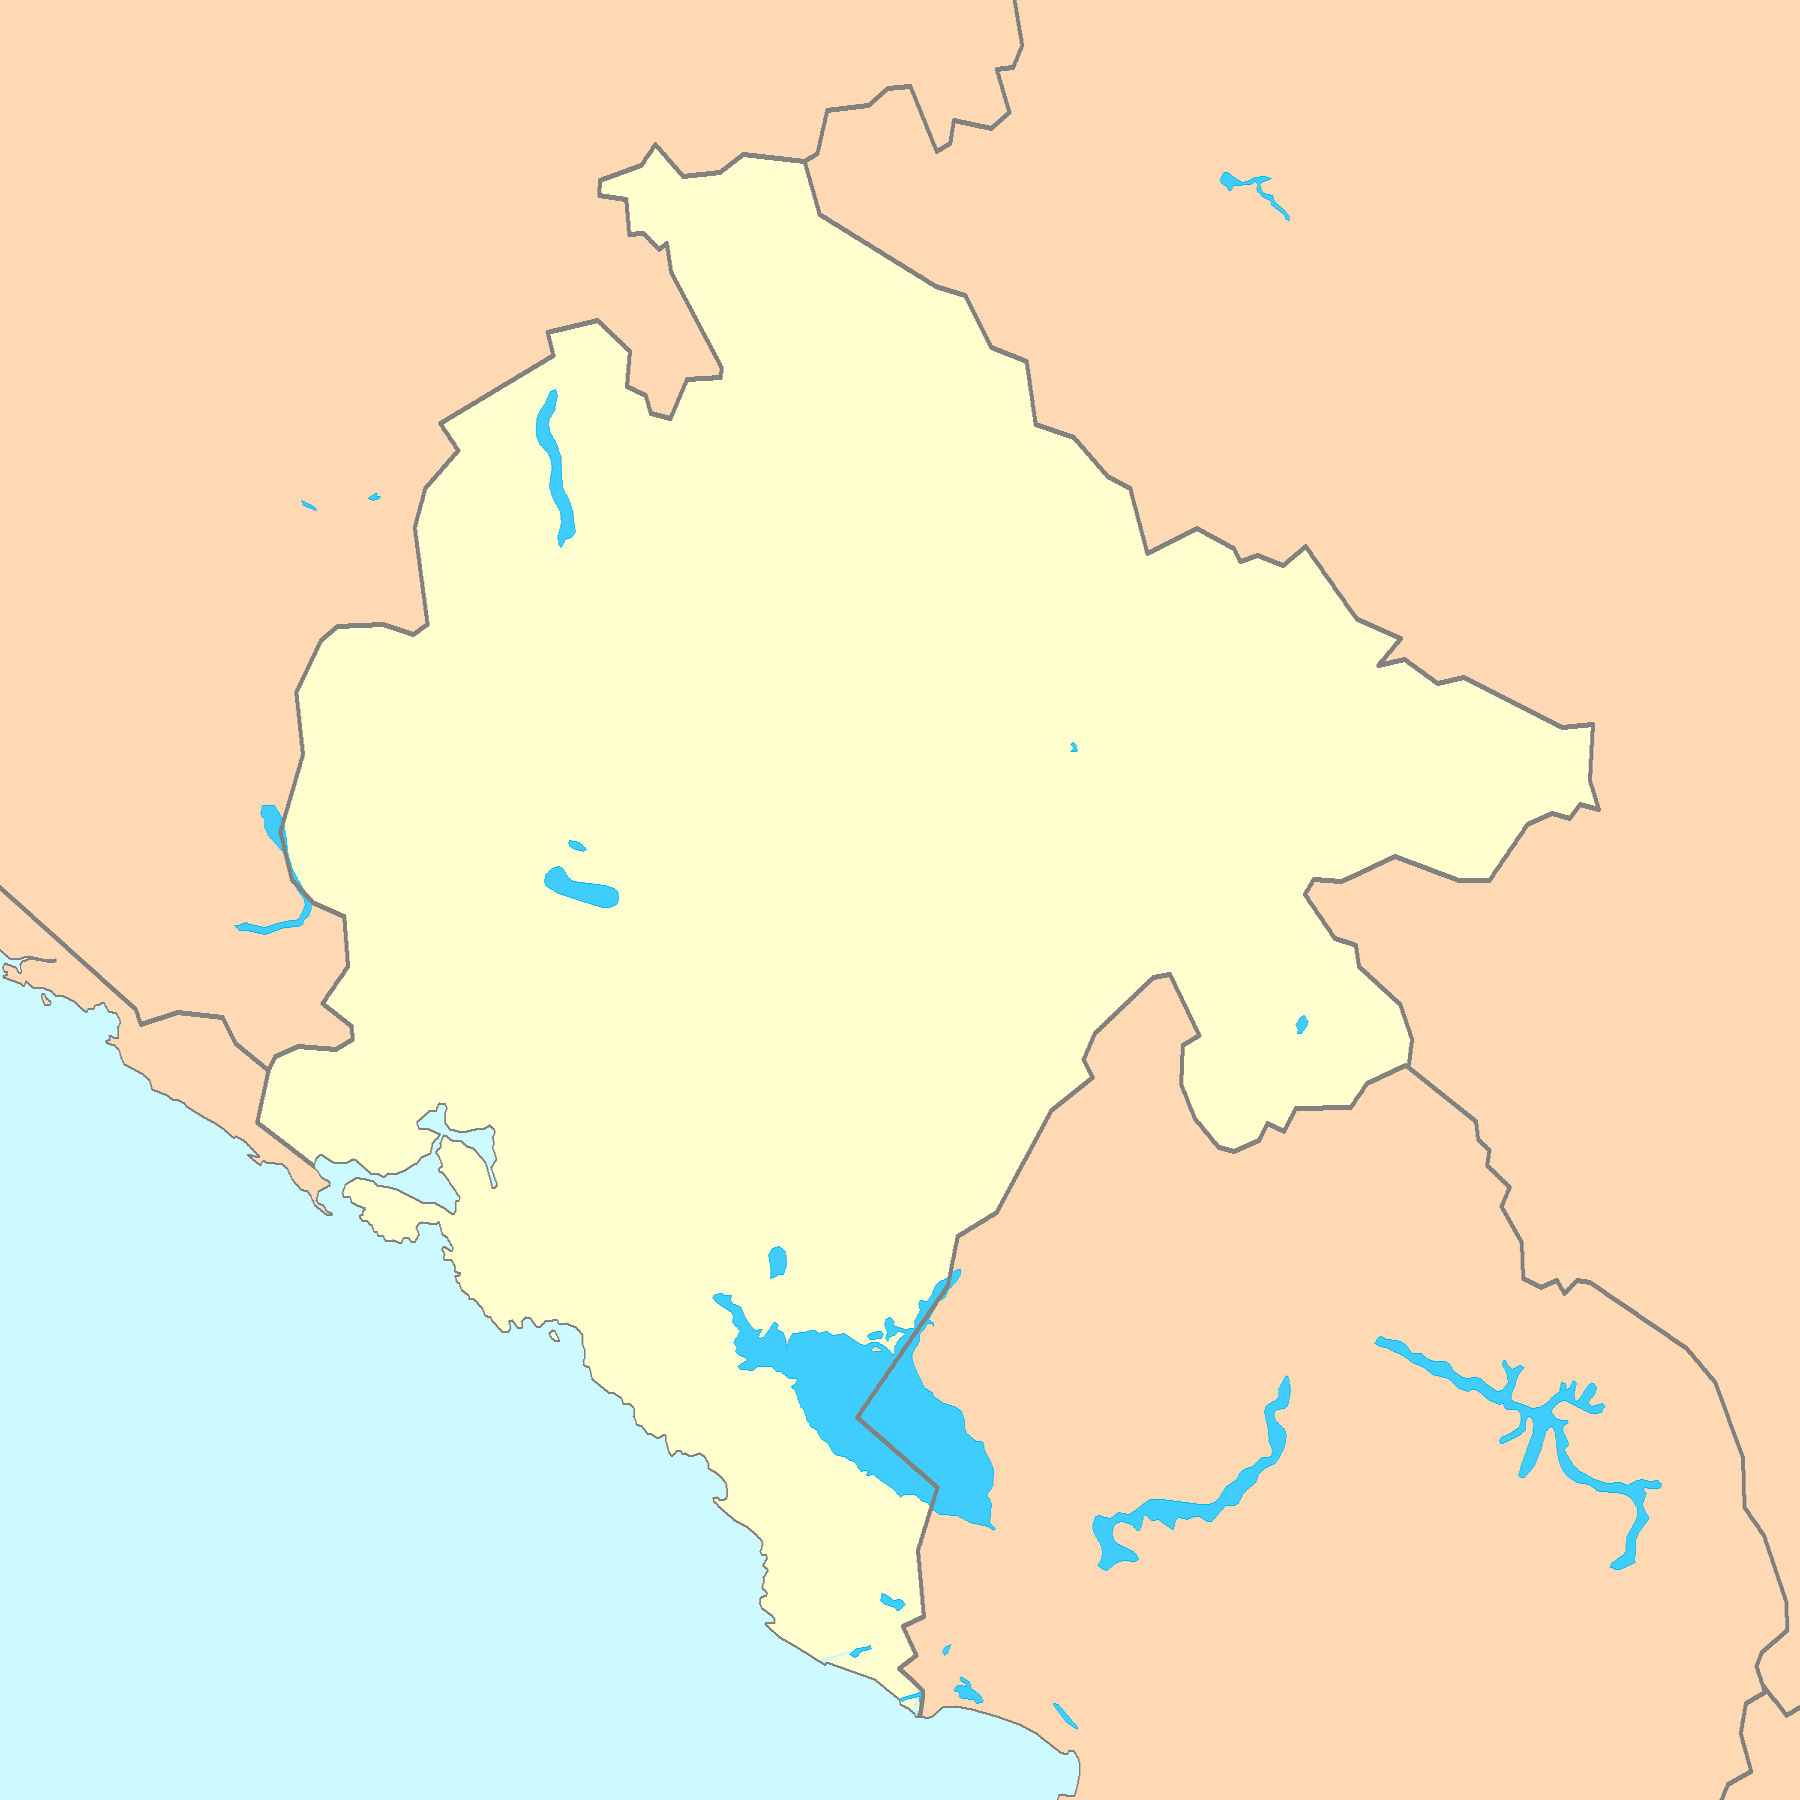 Montenegro Map Blank - Mapsof.